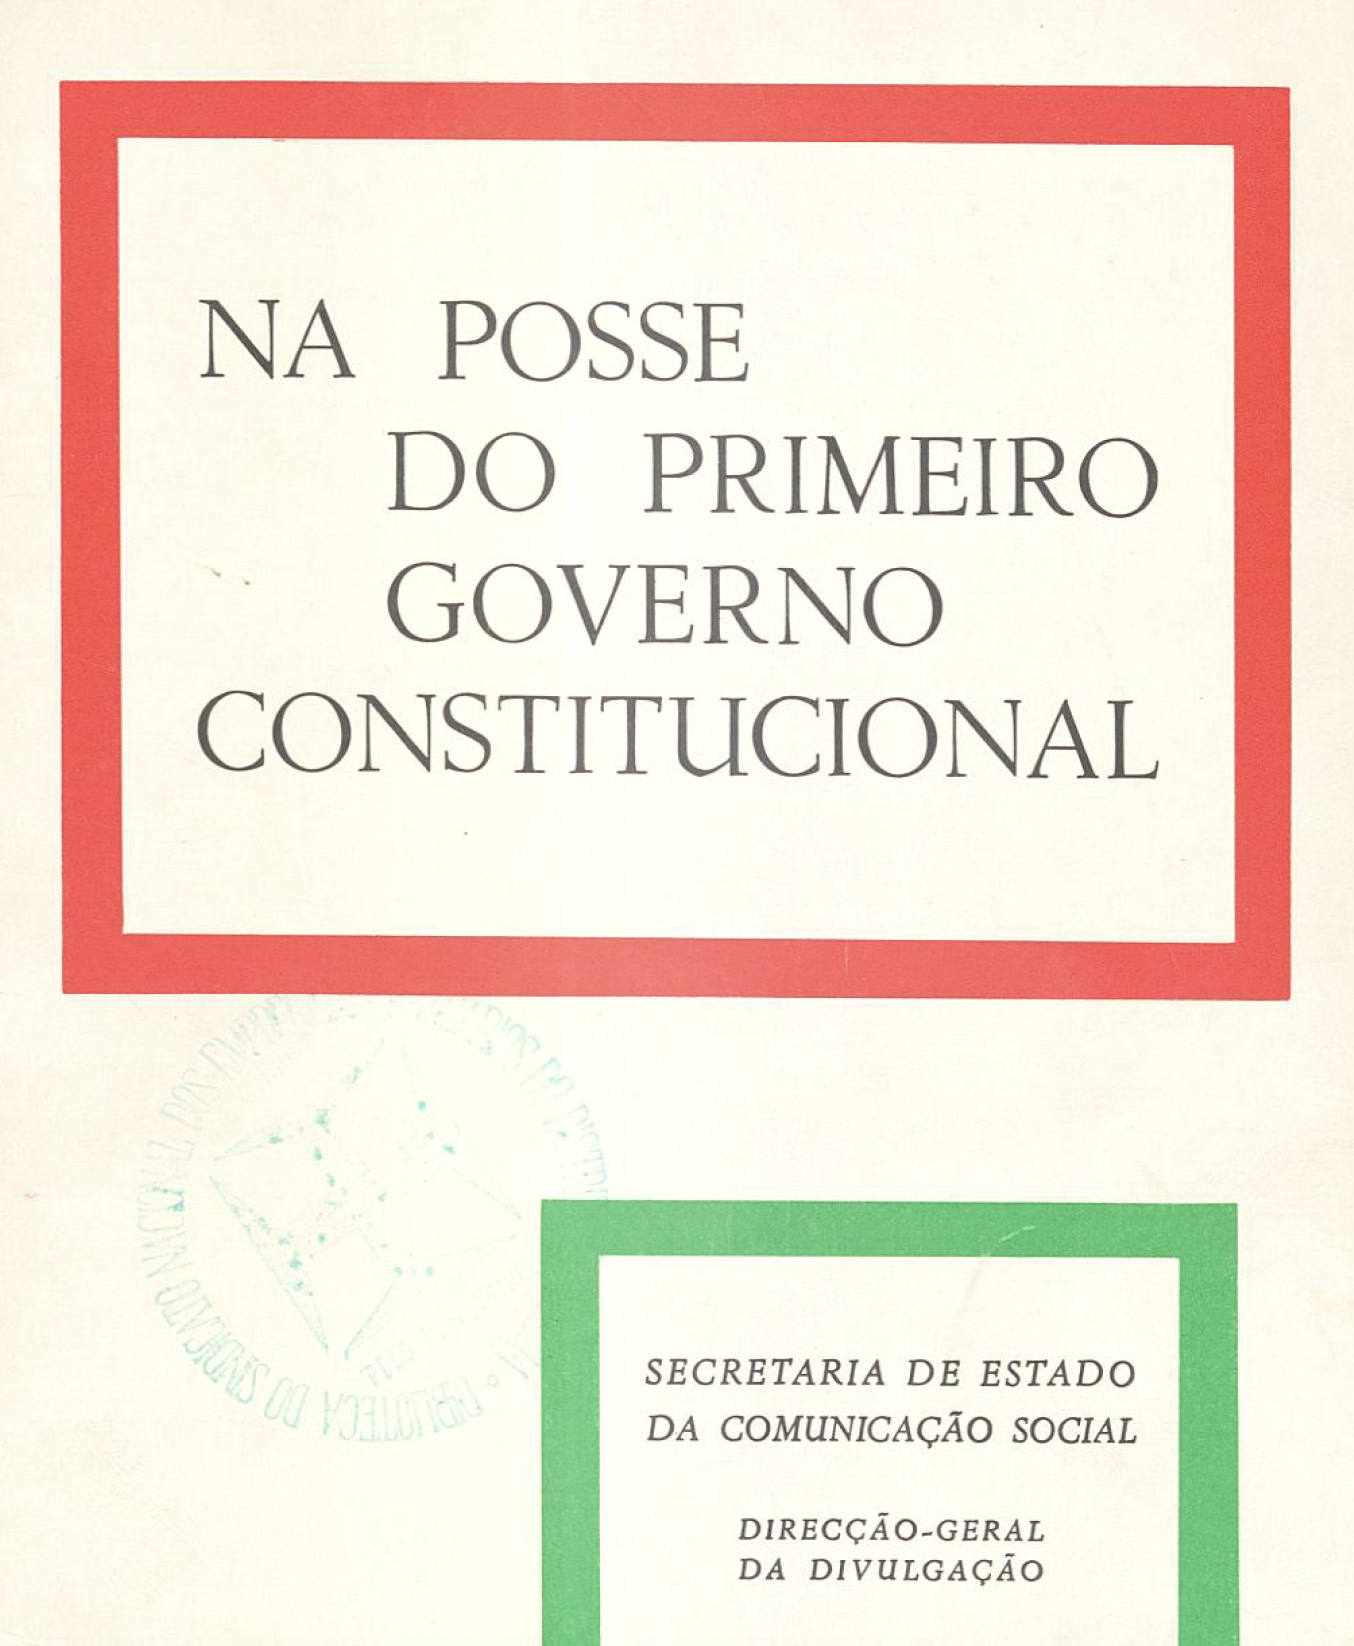 Na posse primeiro governo constitucional